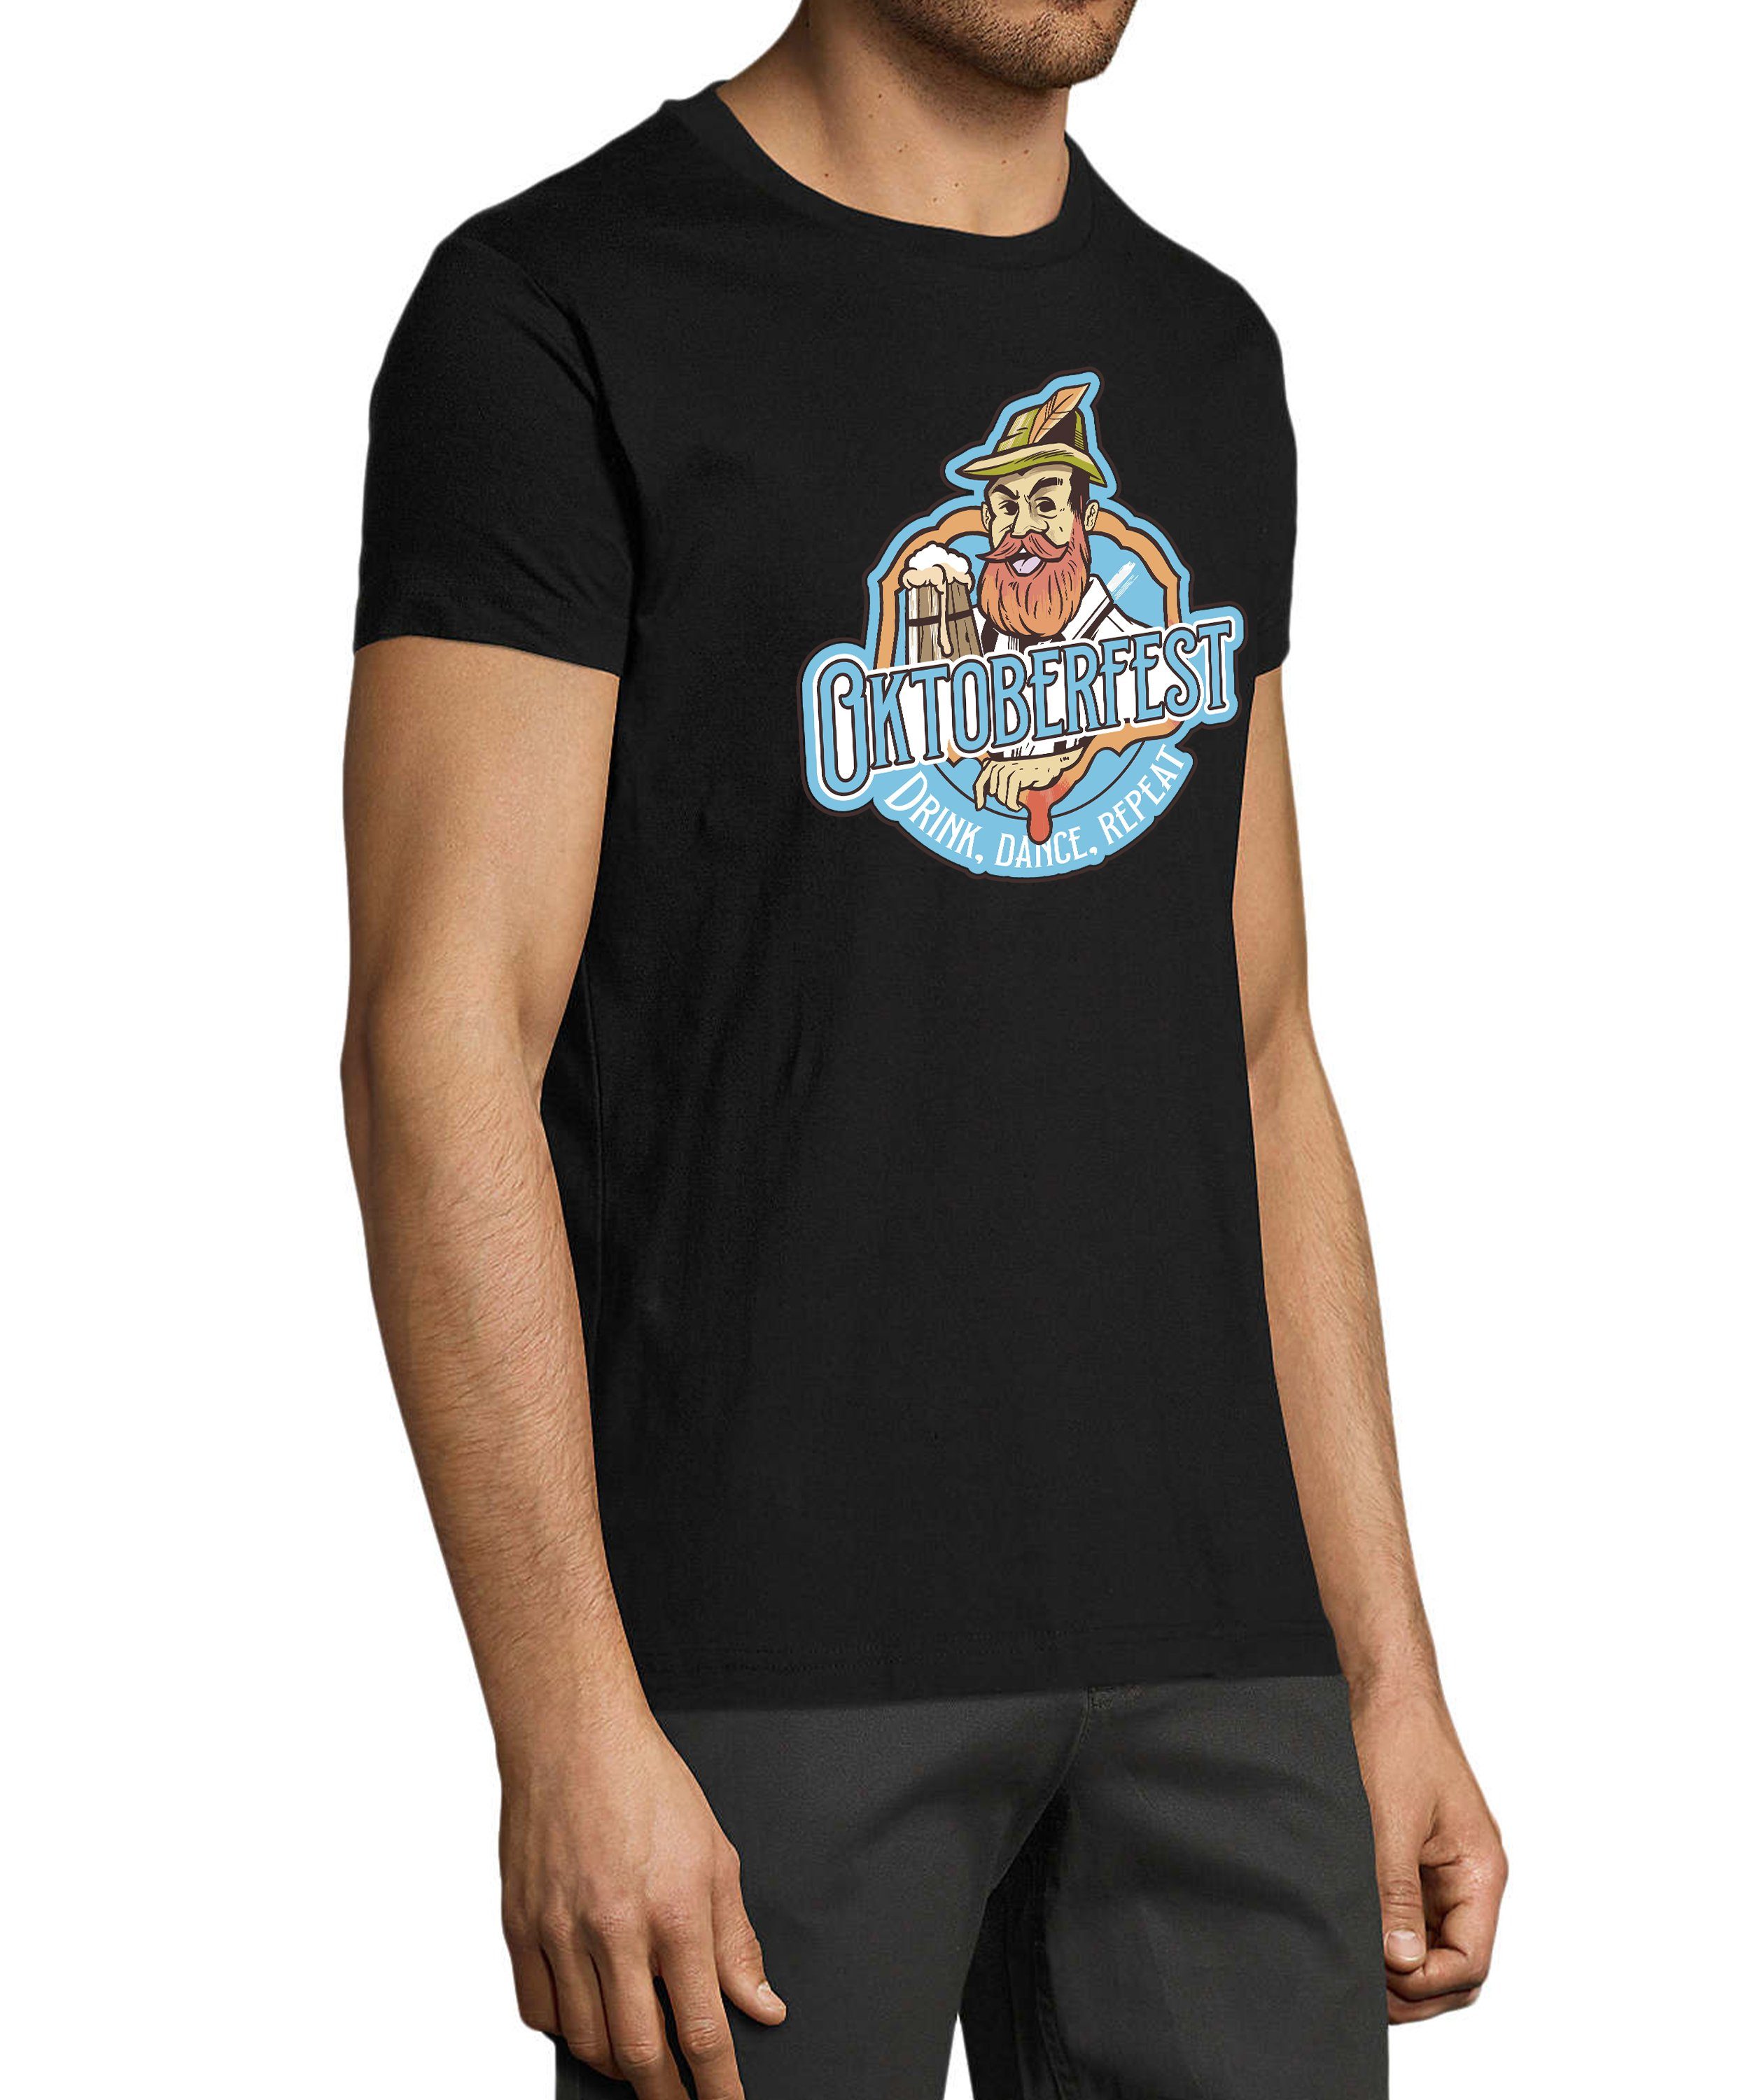 MyDesign24 T-Shirt Aufdruck Shirt schwarz Print mit Oktoberfest Baumwollshirt Fit, Fun Regular Herren T-Shirt Trinkshirt - i318